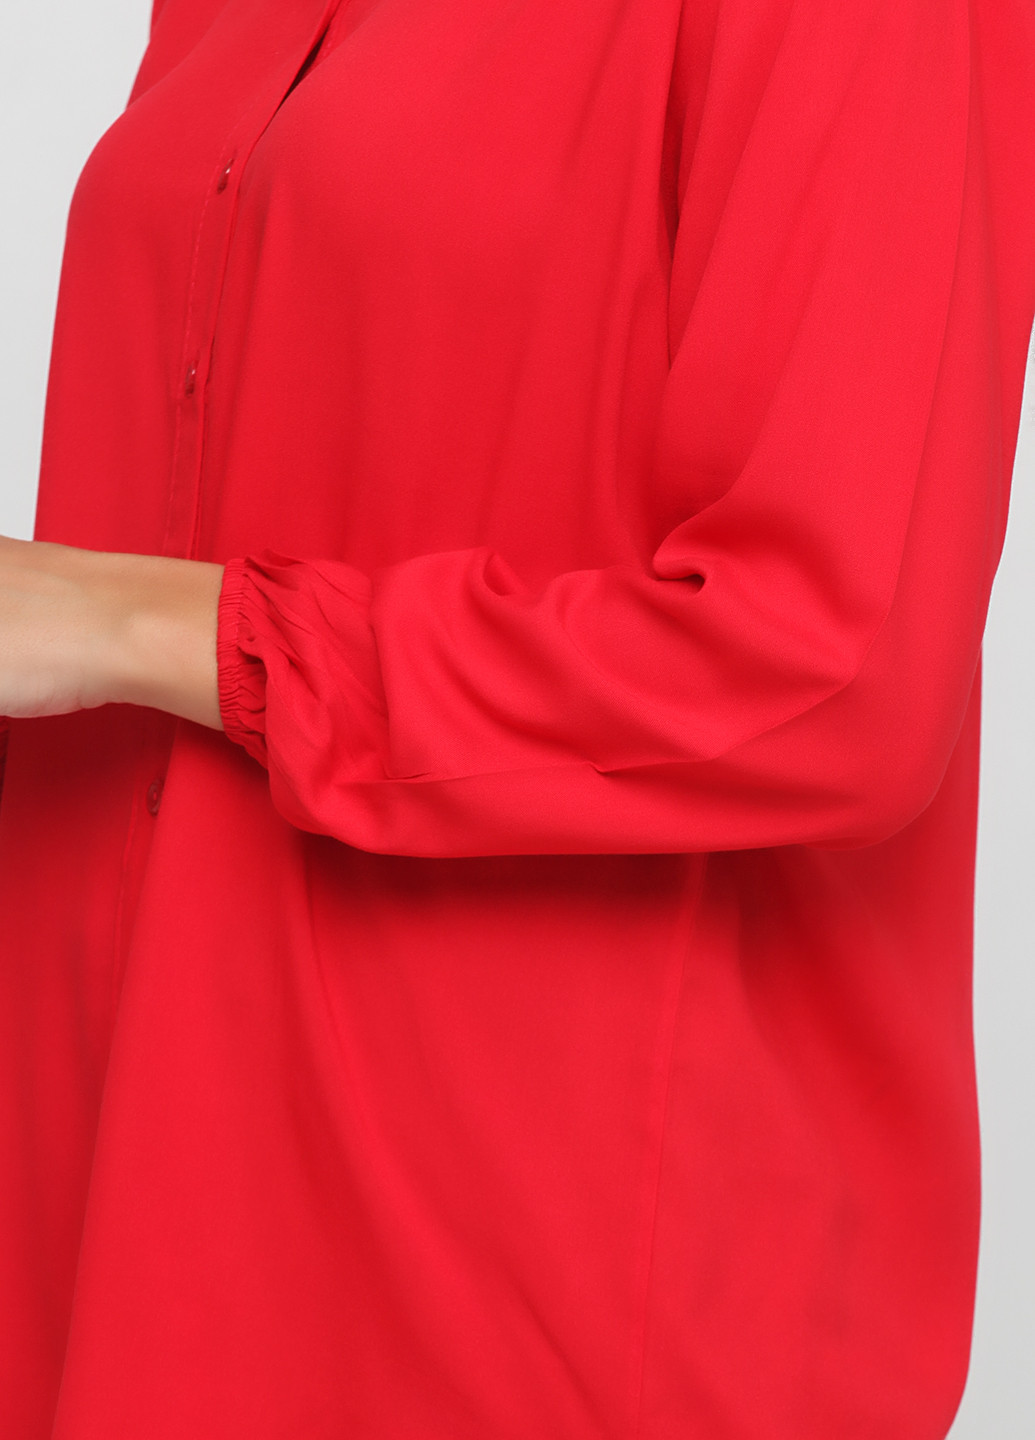 Красная демисезонная блуза Eren